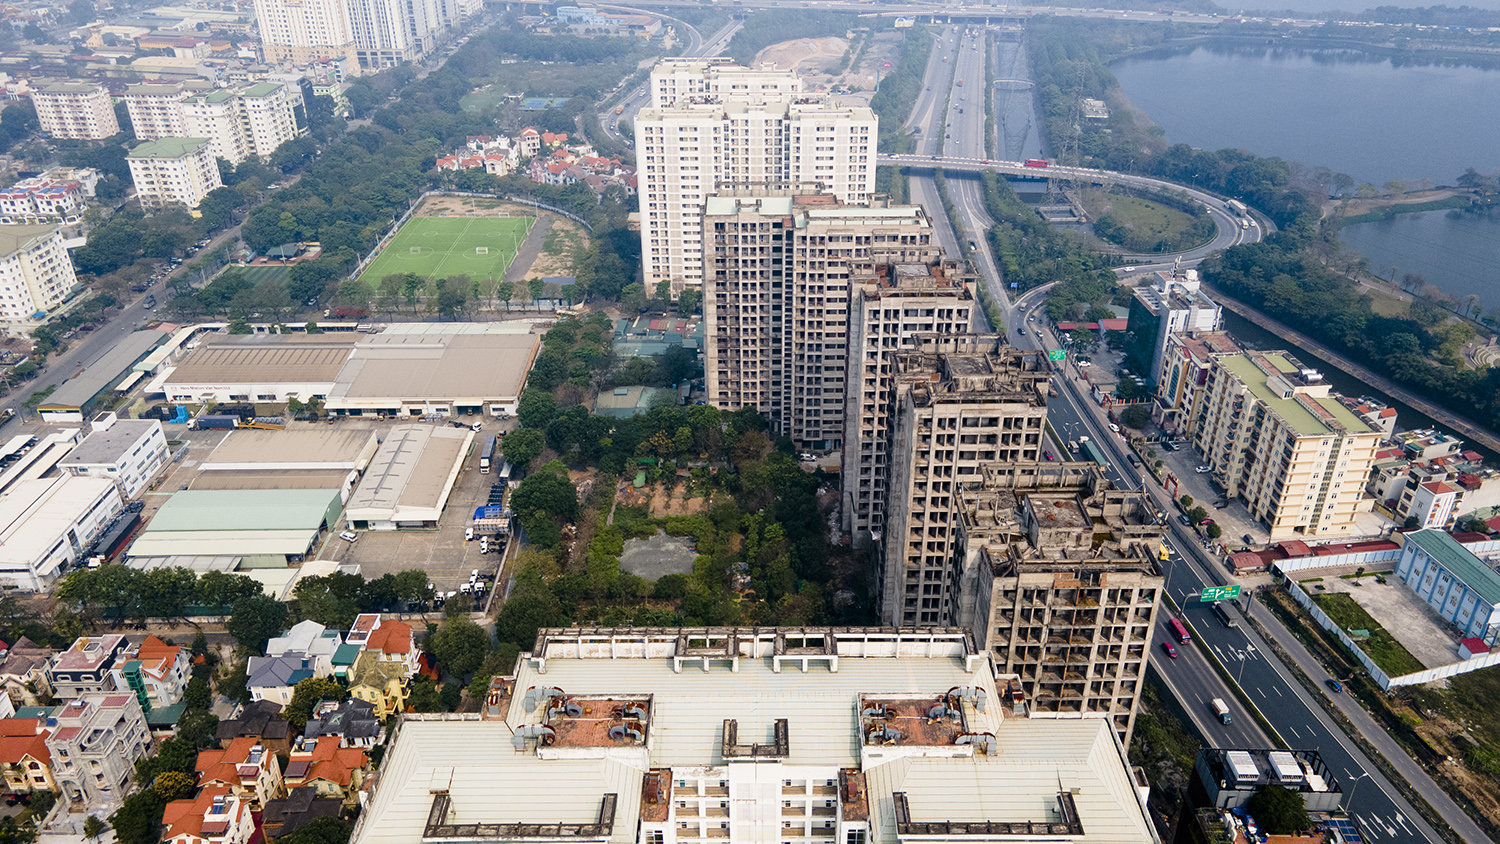 Khu ký túc xá Pháp Vân - Tứ Hiệp (Hoàng Liệt, Hoàng Mai, Hà Nội) là một trong hai dự án ký túc xá (KTX) tập trung quy mô lớn và hiện đại bậc nhất tại Hà Nội.